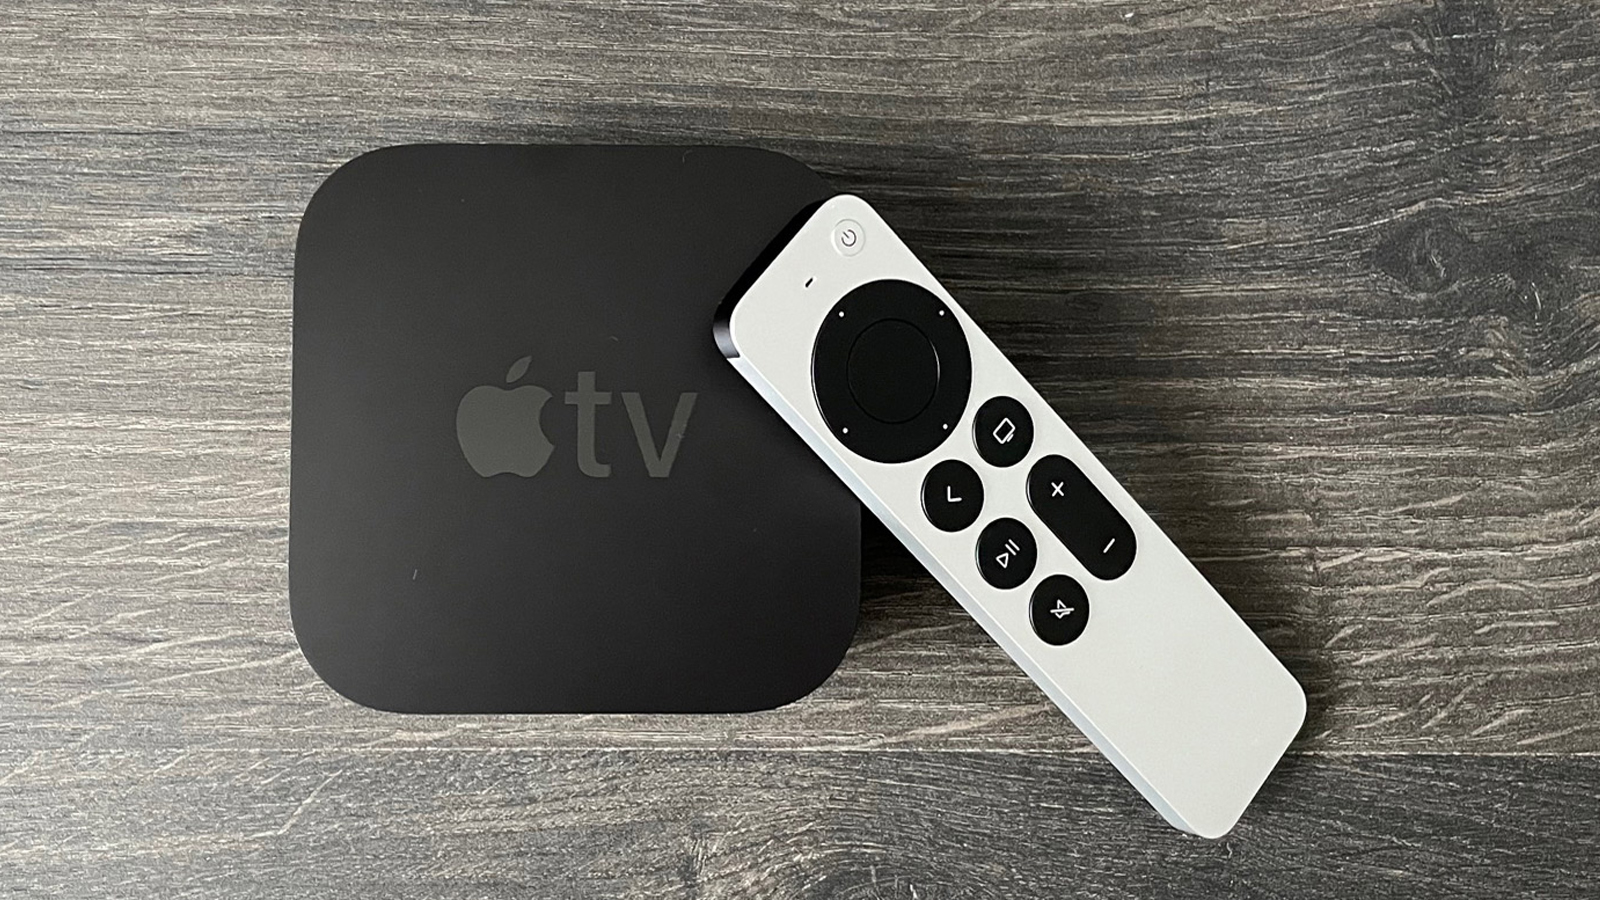  Apple TV 4K 2021 года и его пульт дистанционного управления лежат на столе